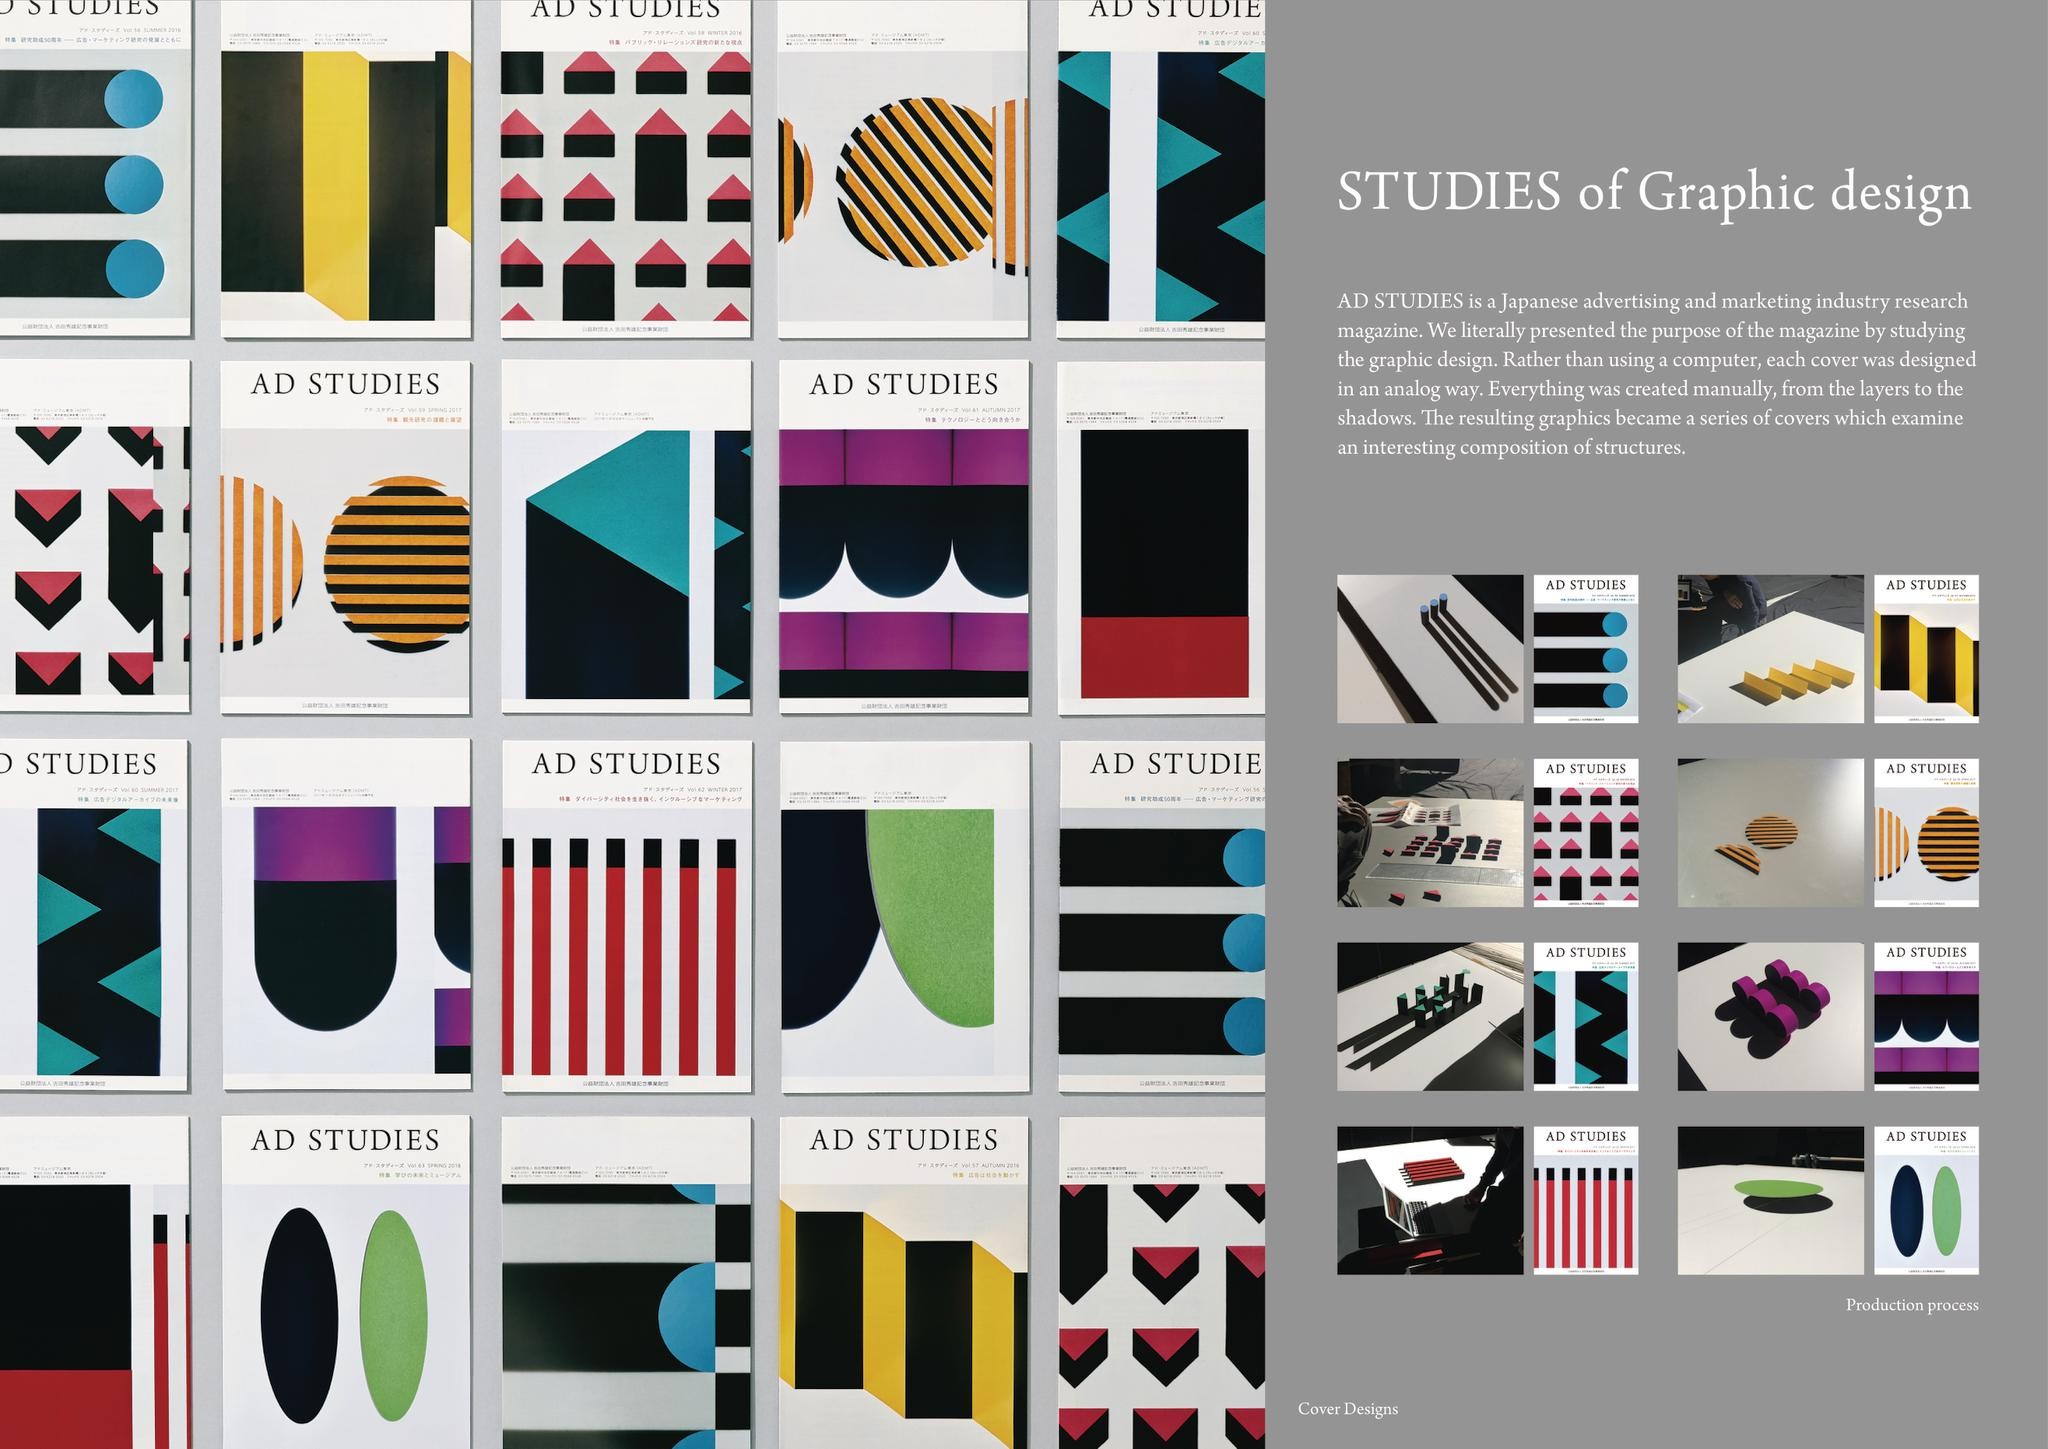 STUDIES of Graphic design